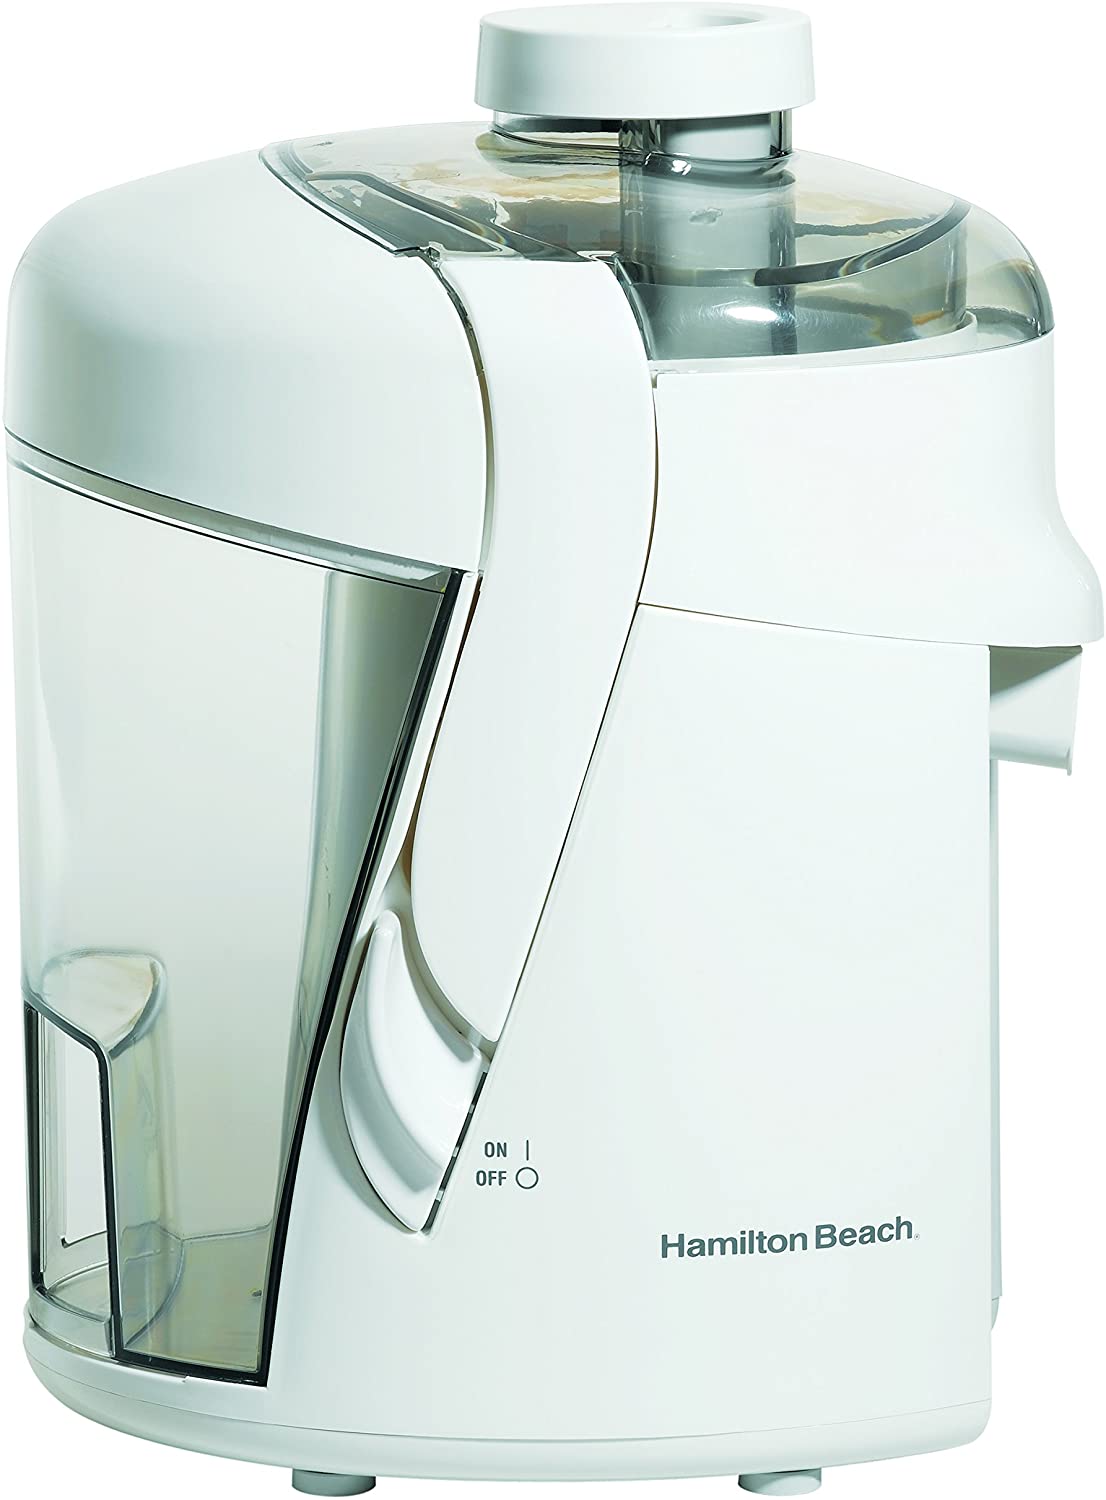 Hamilton Beach HealthSmart Juice Extractor Durable 350-Watt Electric Juicer HAM67800